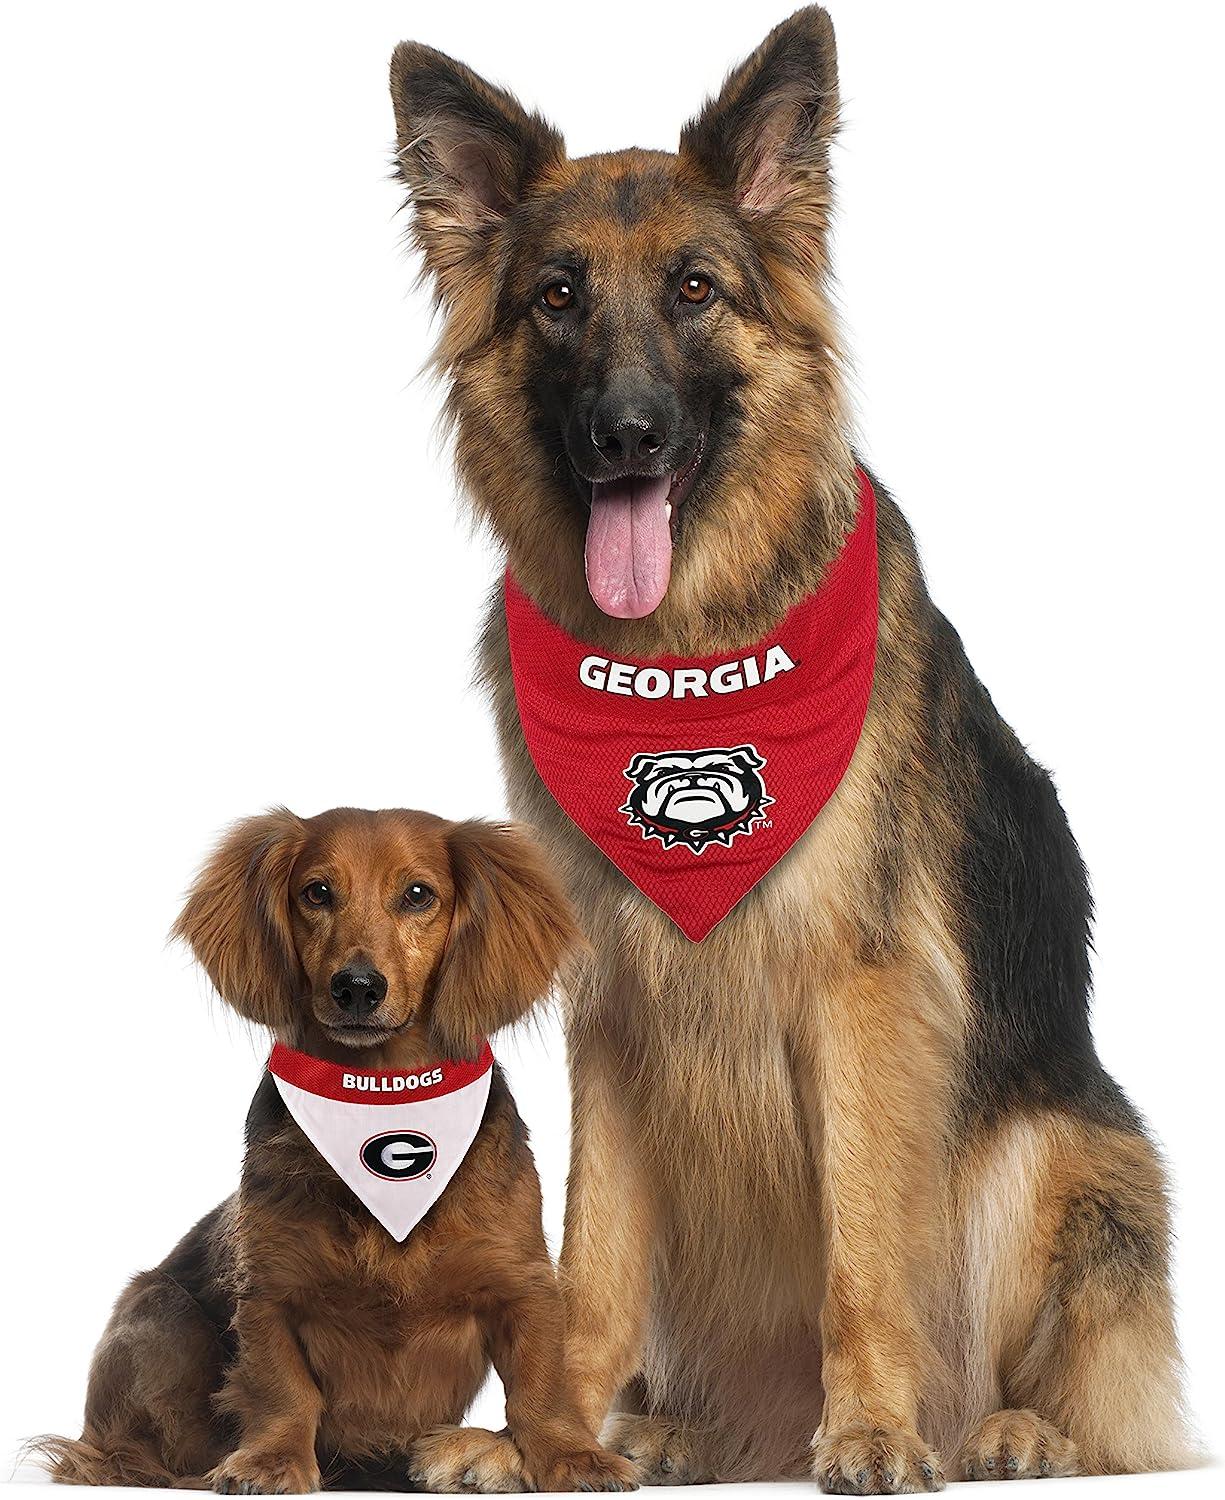  Pet Goods NCAA Louisville Cardinals Dog Collar, Medium : Pet  Collars : Sports & Outdoors